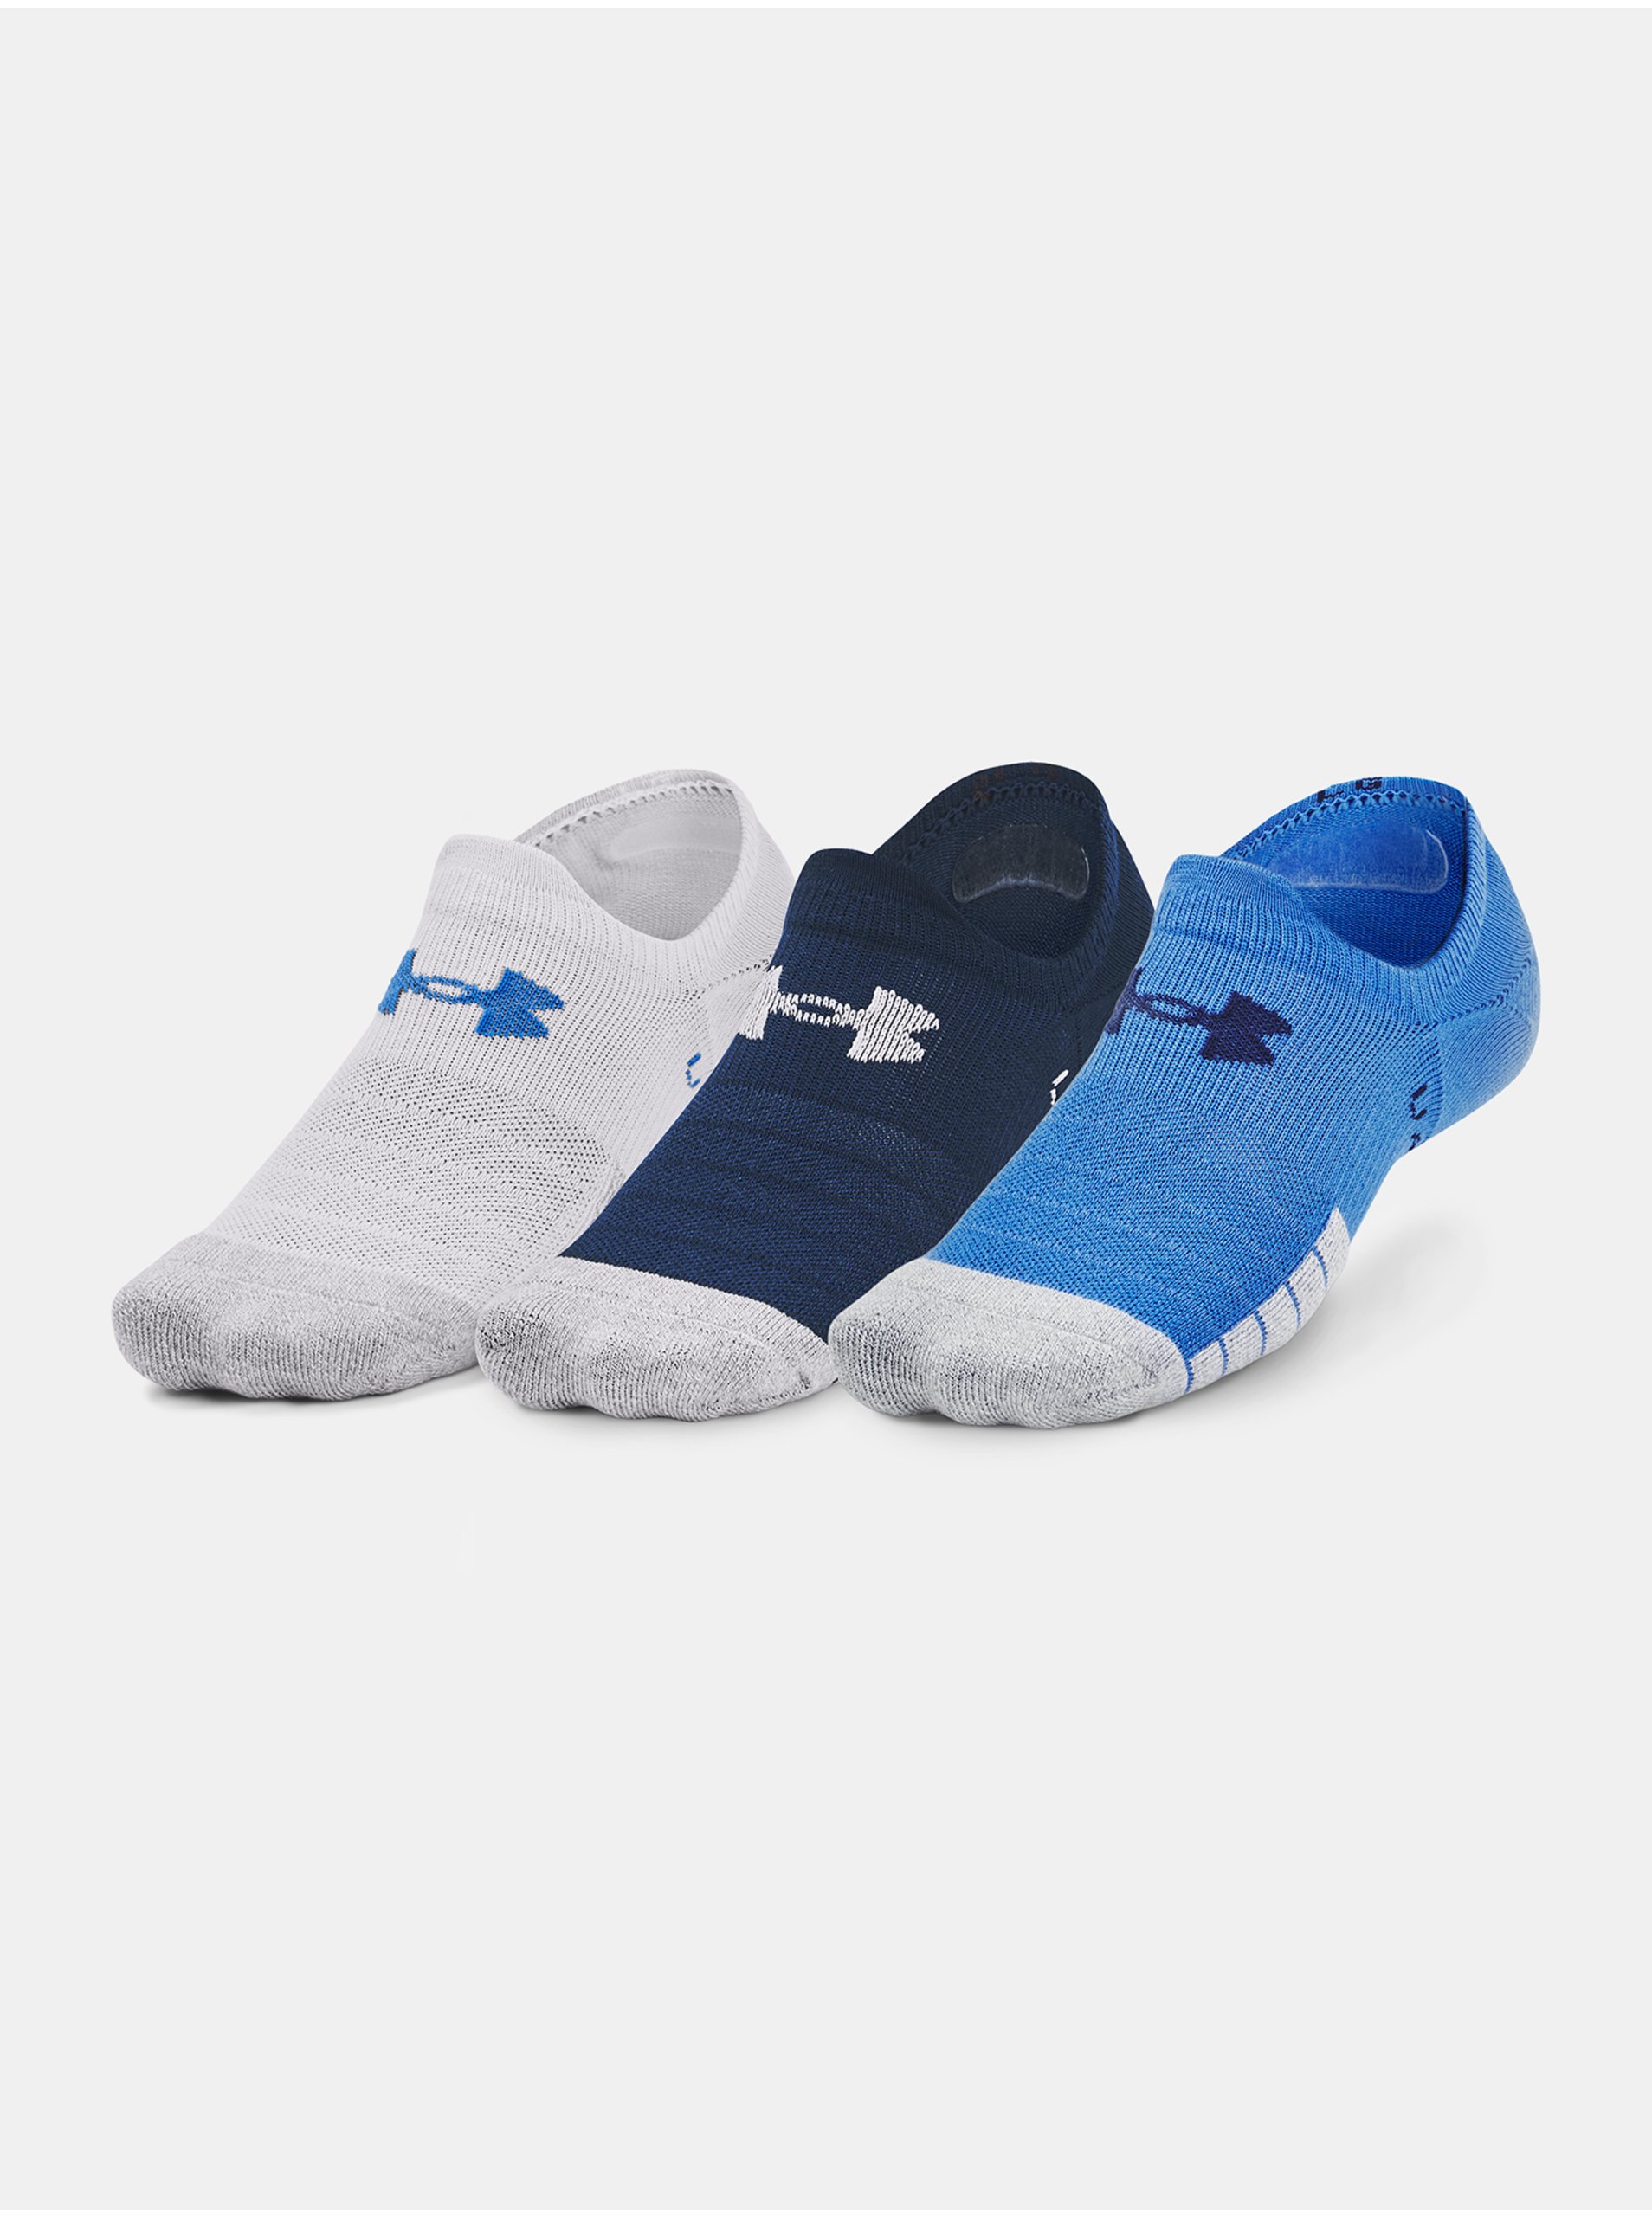 E-shop Sada tří párů sportovních ponožek v bílé, tmavě modré a modré barvě Under Armour Heatgear